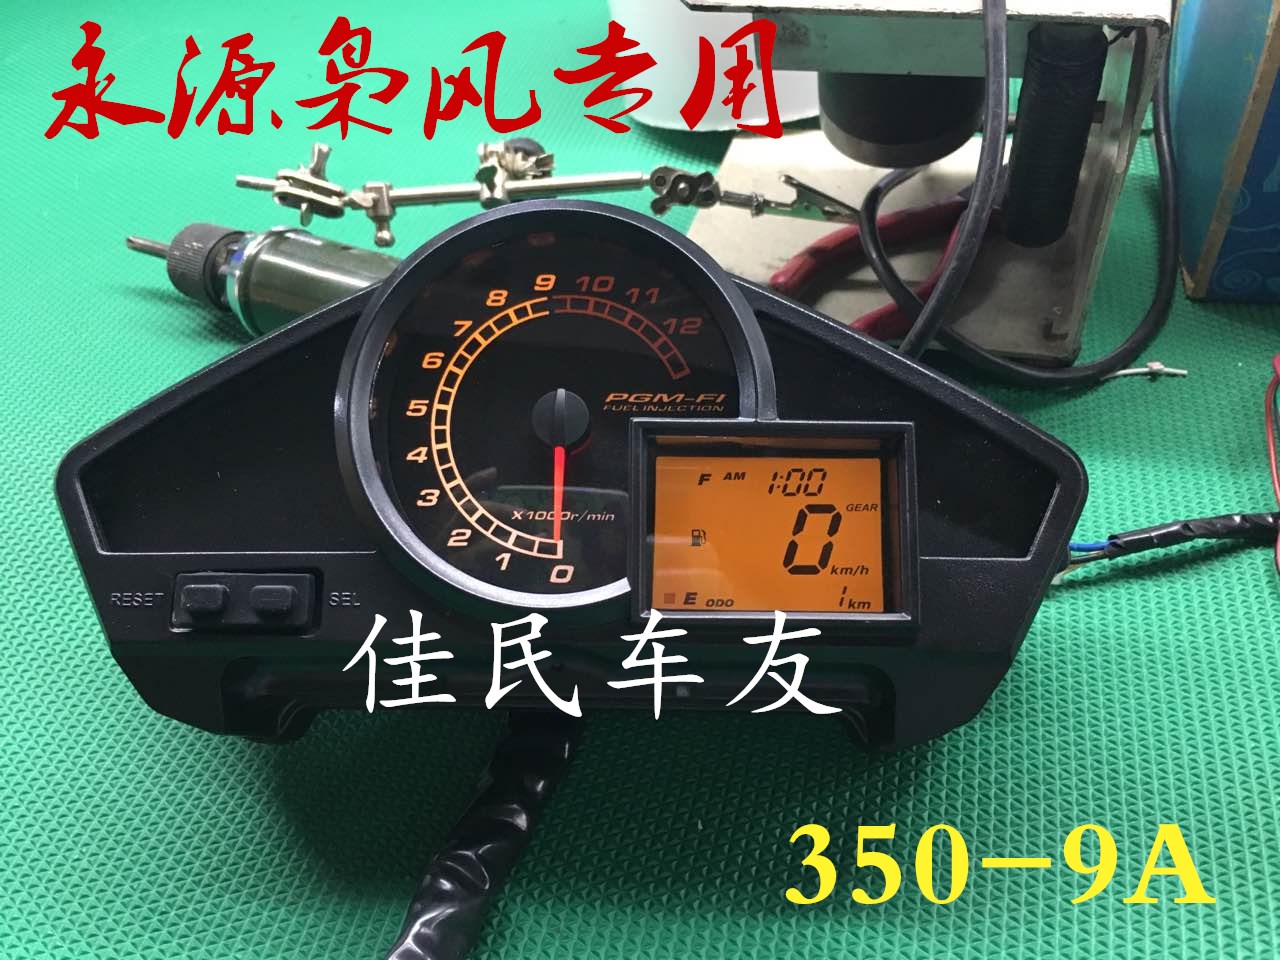 永源枭风摩托车配件YY350-9A仪表总成 码表转速表油量表里程表